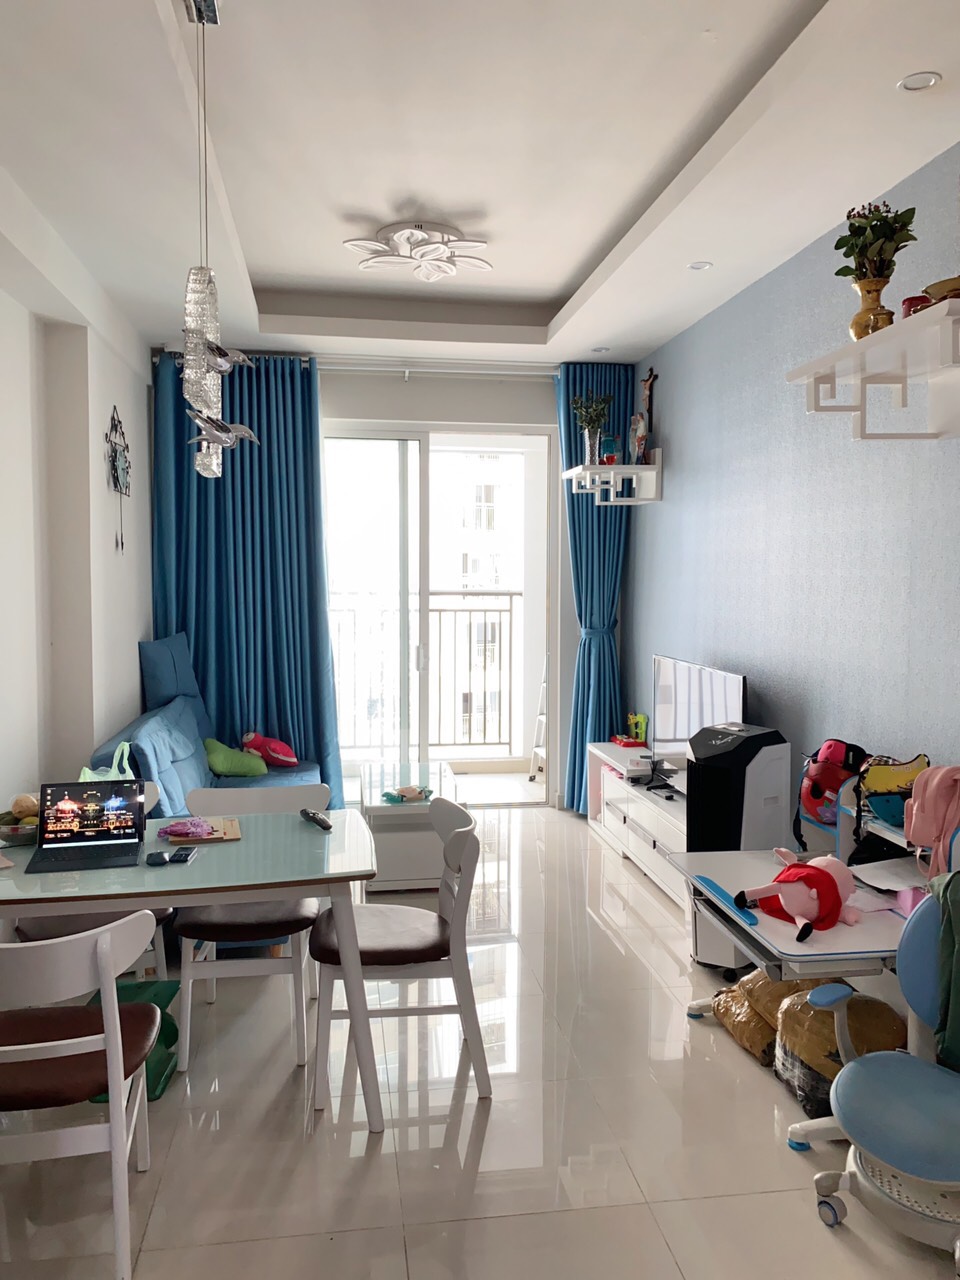 Cho thuê gấp căn hộ Richstar Tân Phú giá 11tr/tháng cực rẻ, DT 65m2 2PN Full nội thất cao cấp